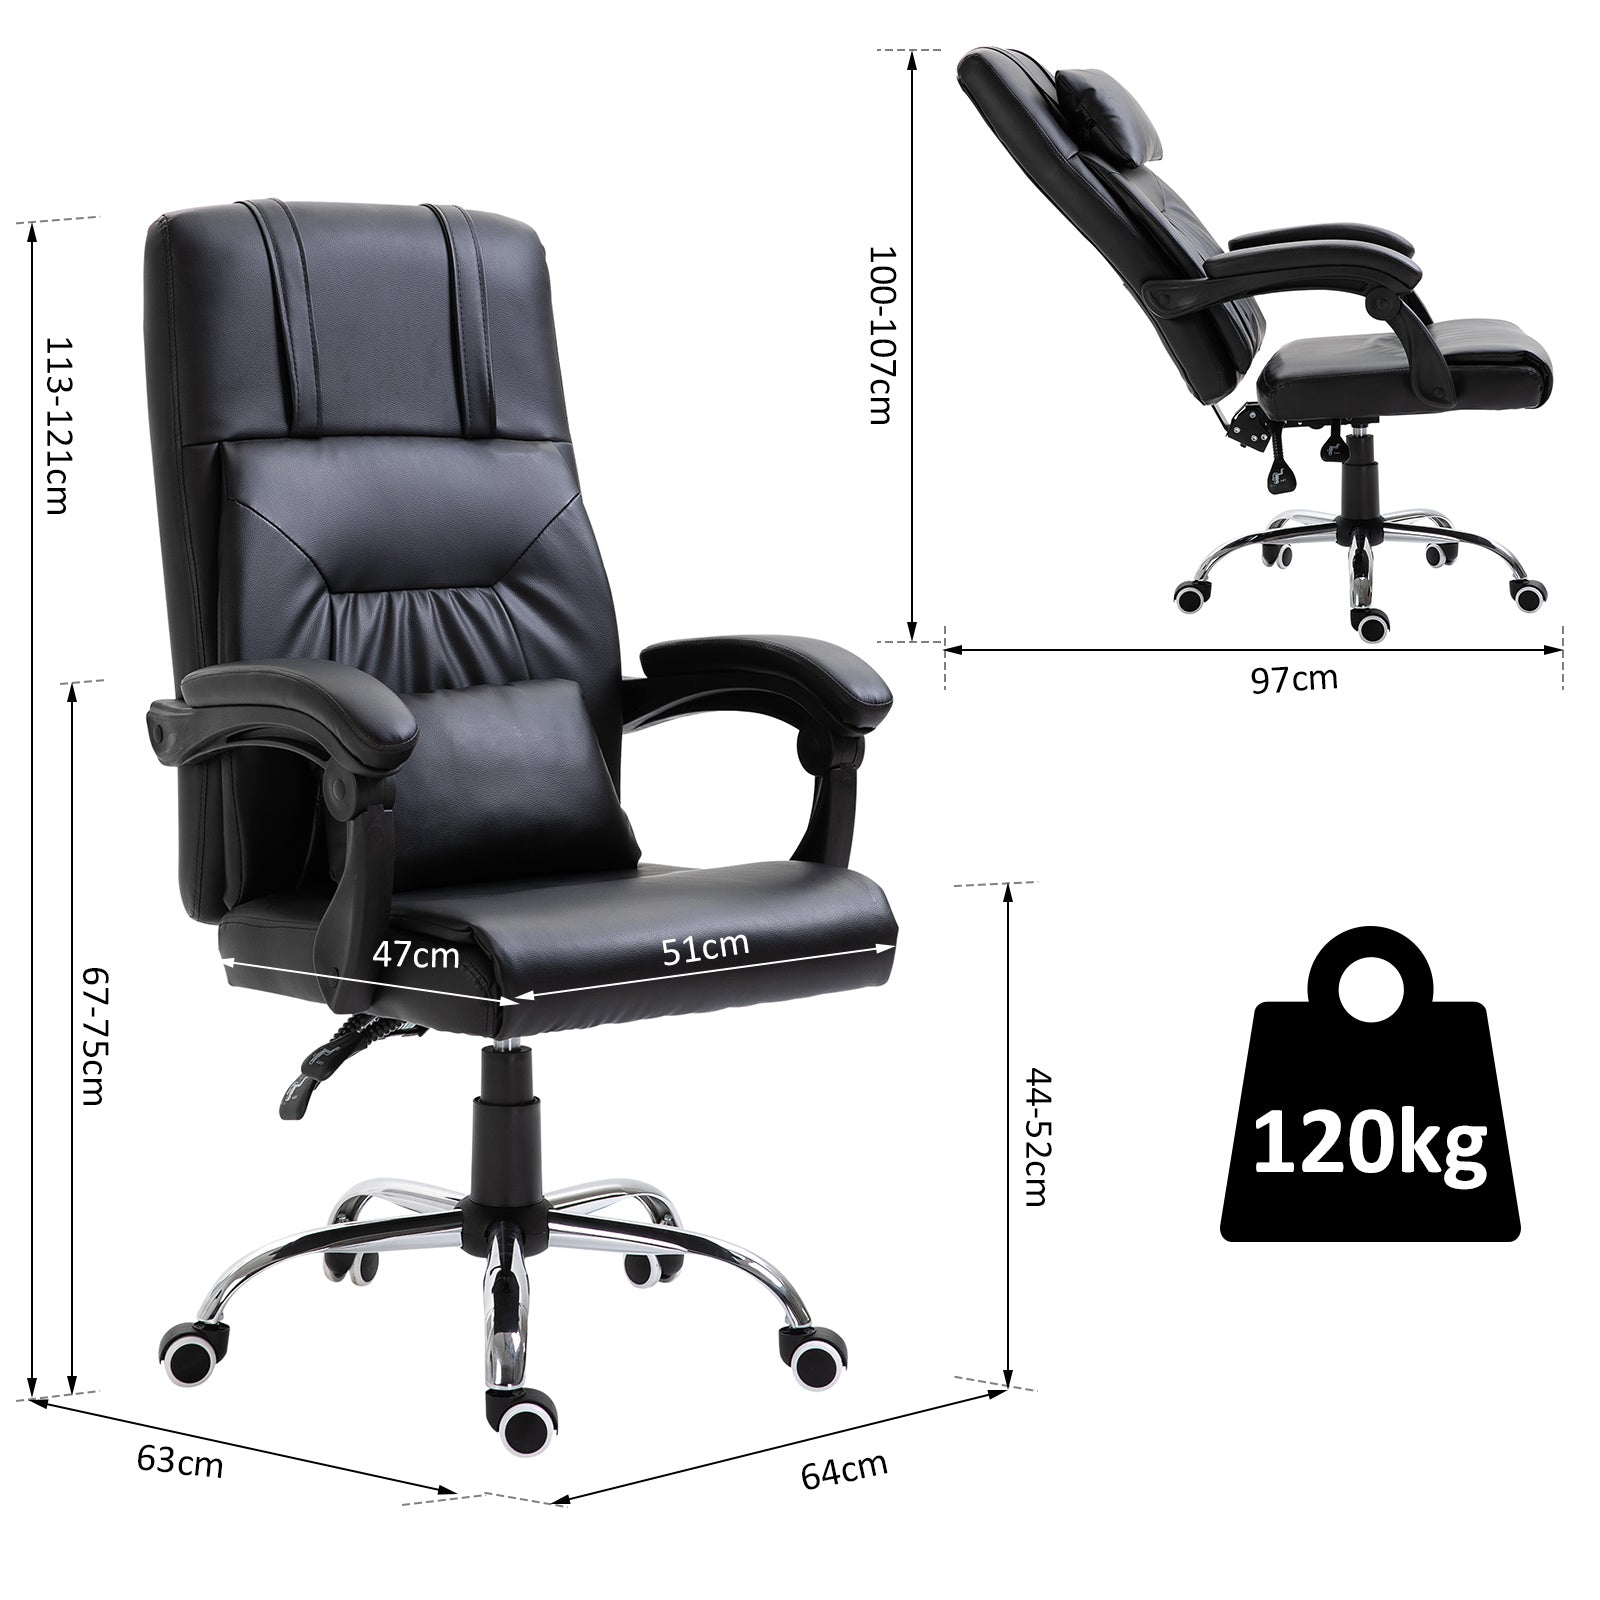 https://caldaiemurali.it/cdn/shop/products/immagine-2-easycomfort-easycomfort-sedia-ufficio-con-braccioli-sedie-da-gaming-ergonomiche-sedia-scrivania-con-cuscino-rimovibile-massaggiante-in-ecopelle-nero-ean-8054144134086.jpg?v=1695905337